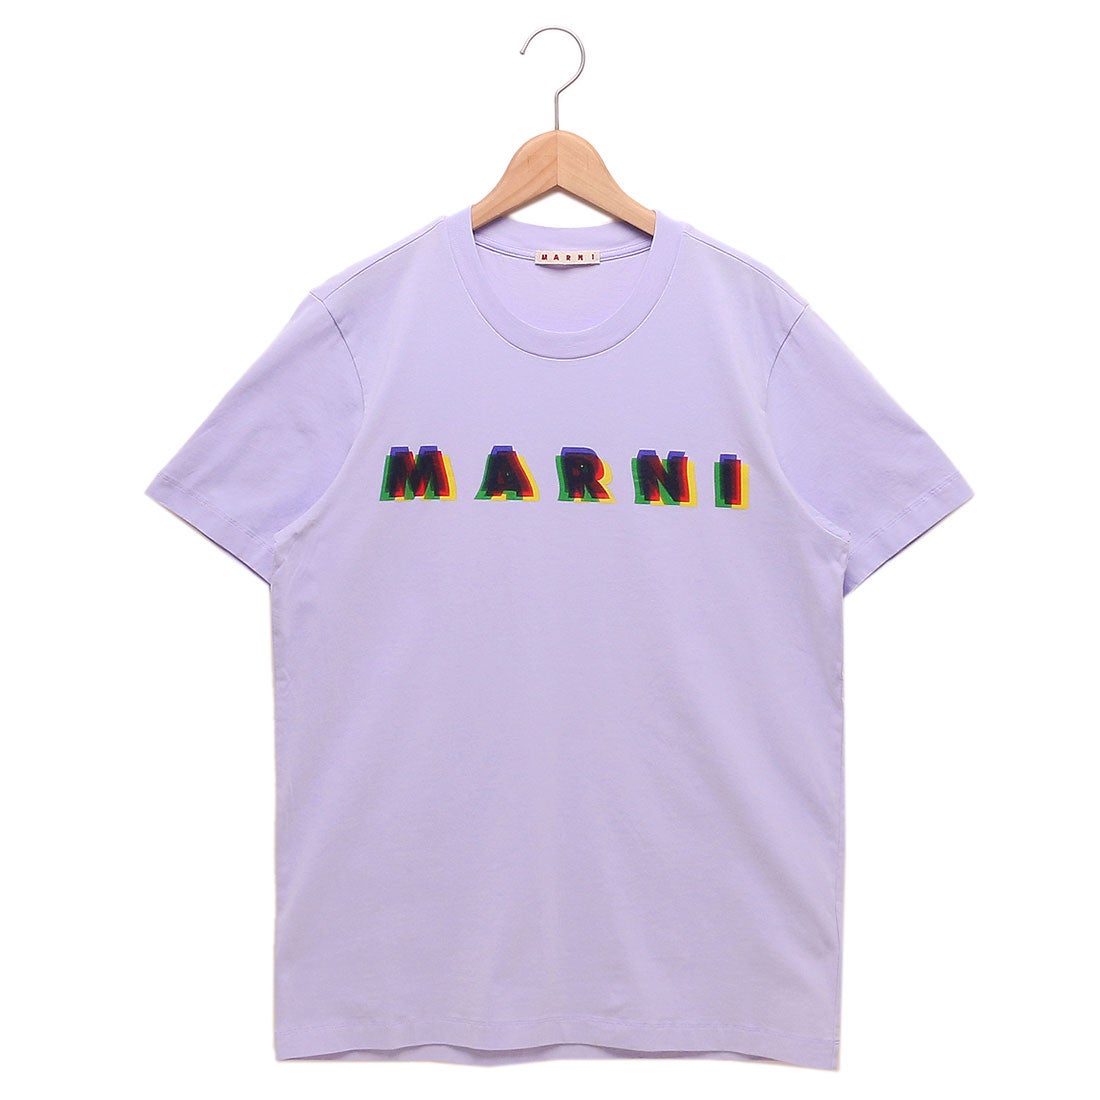 マルニ MARNI Tシャツ 3D MARNIプリント コットンTシャツ 半袖Tシャツ